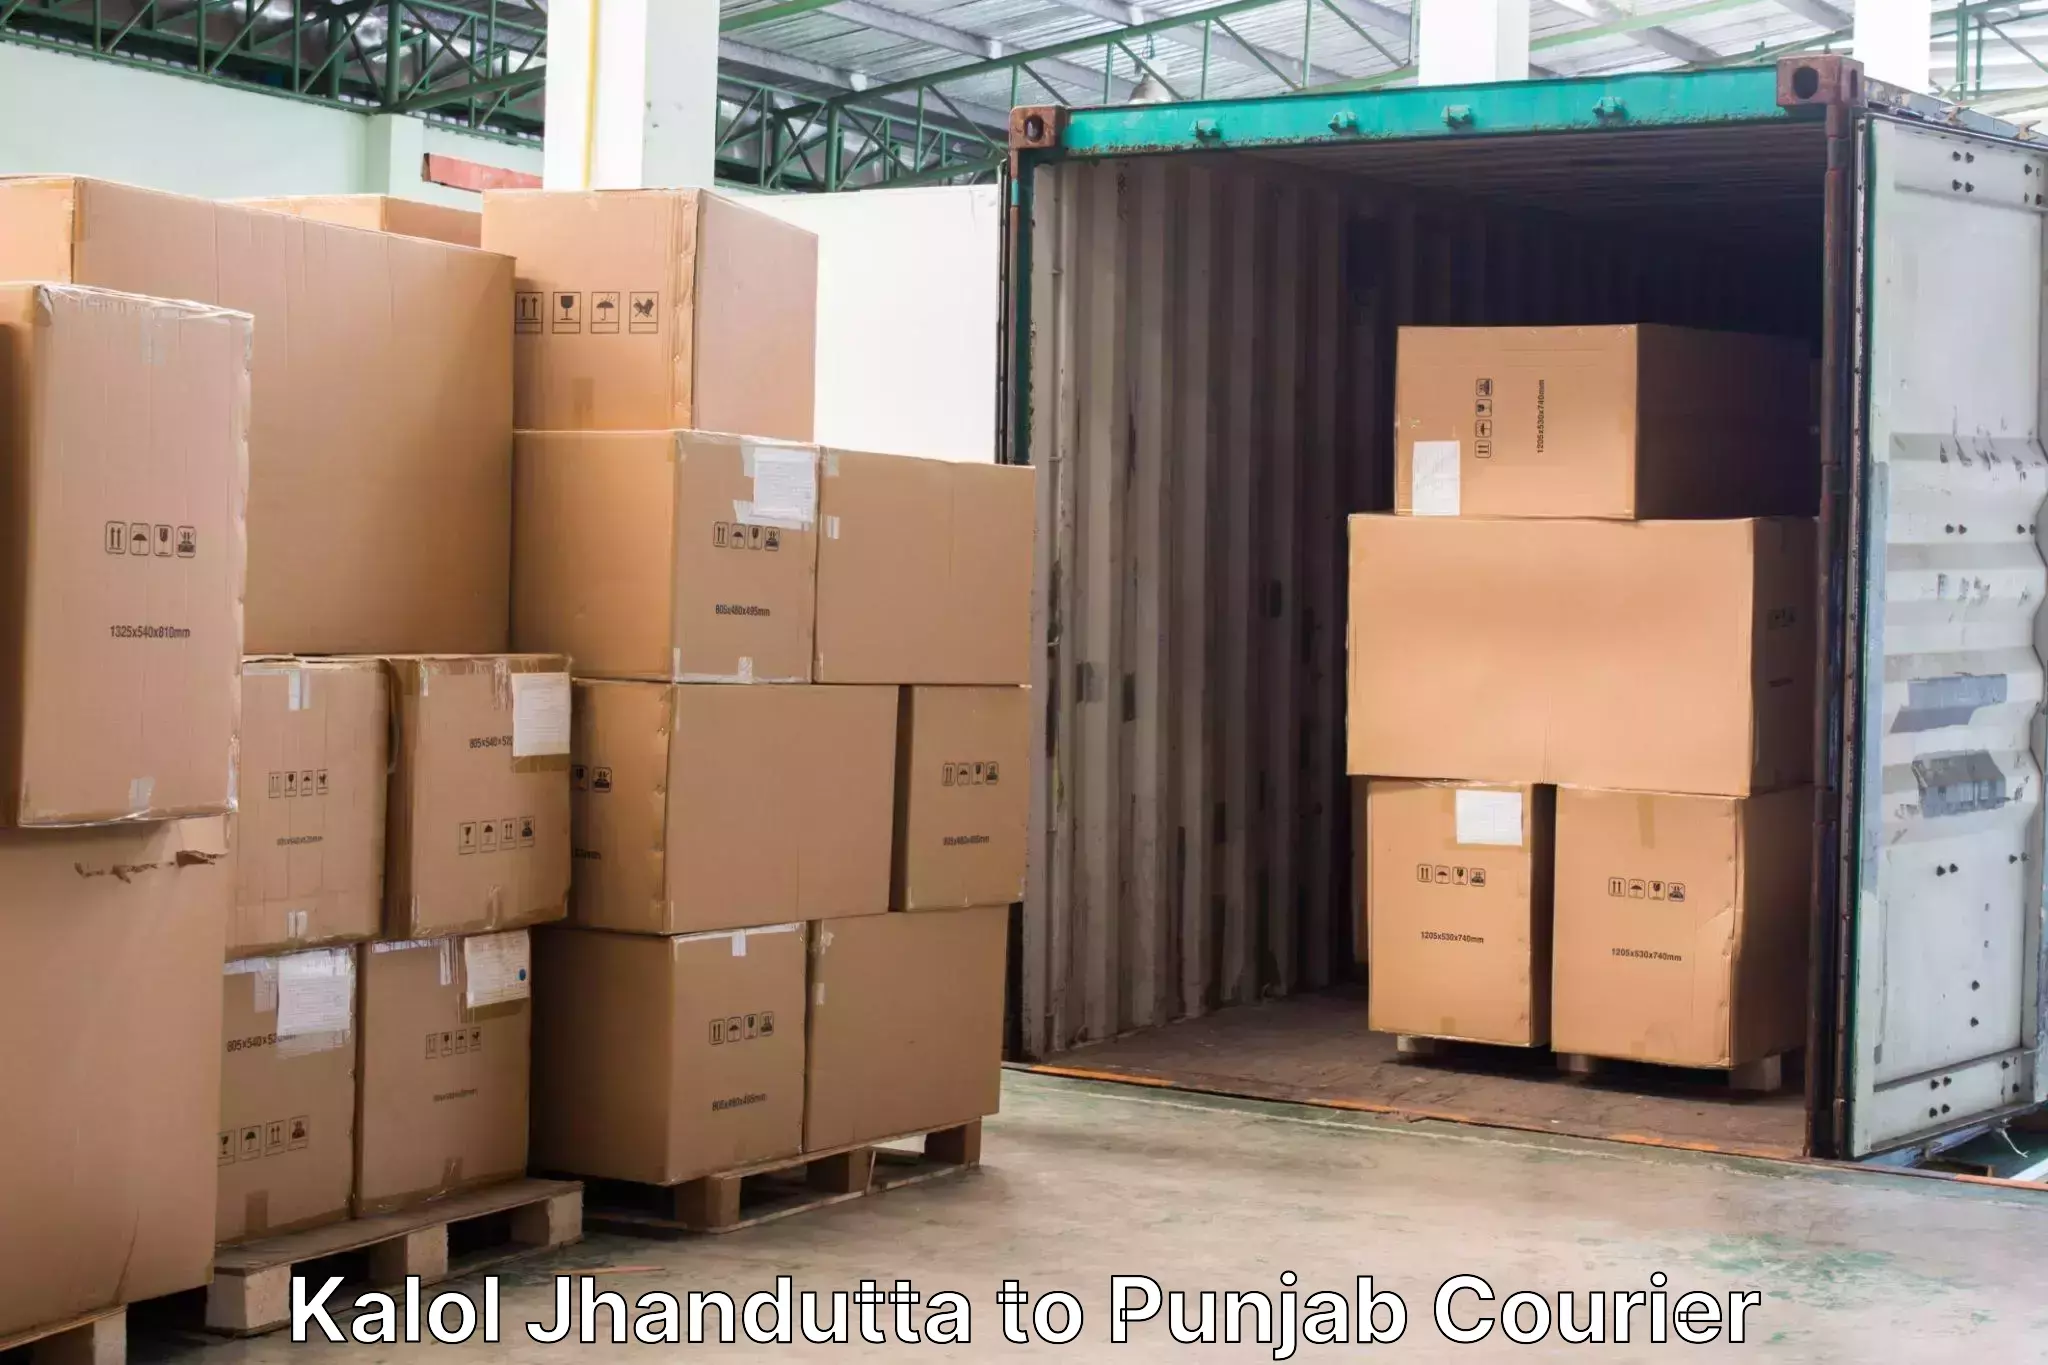 Luggage transport guidelines Kalol Jhandutta to Punjab